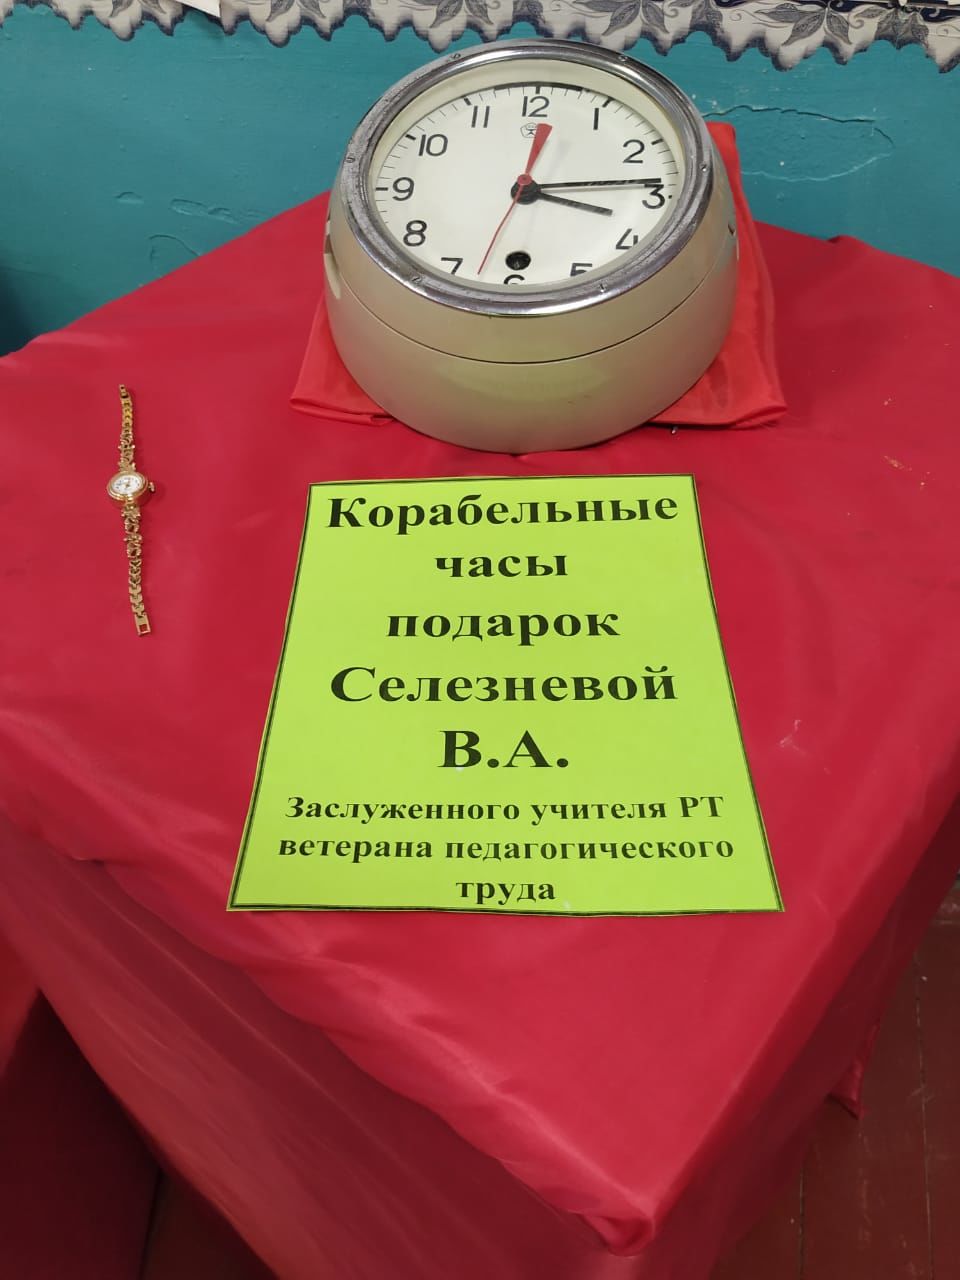 В Старых Саврушах открылась выставка часов